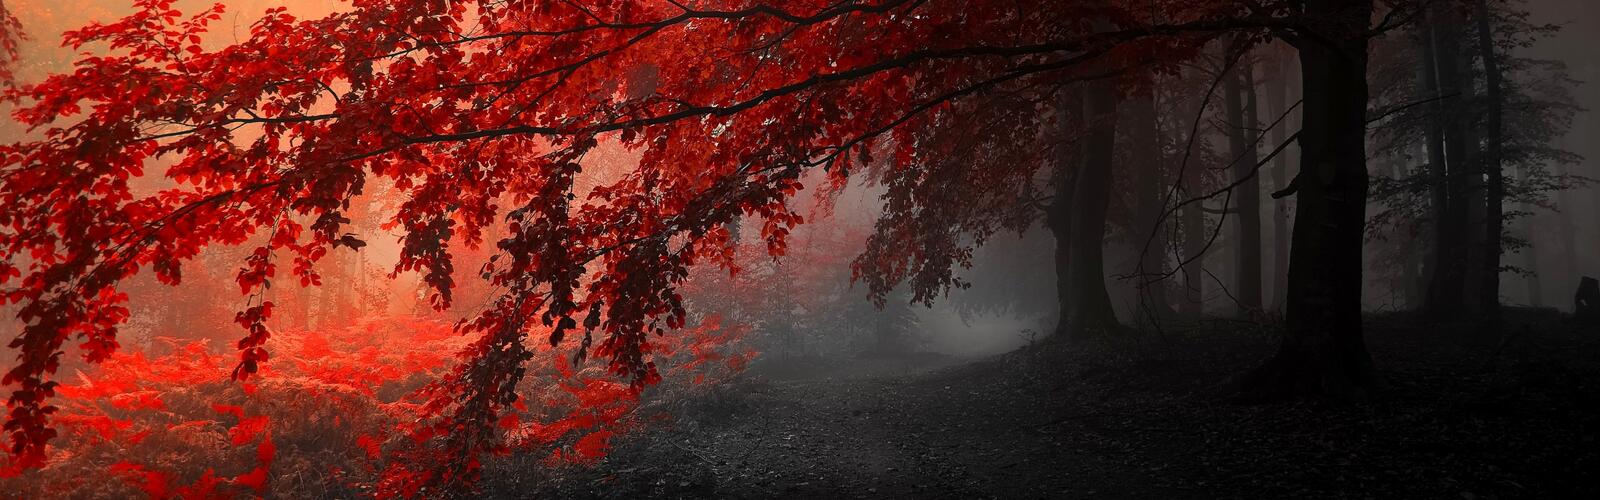 免费照片秋天的红颜色